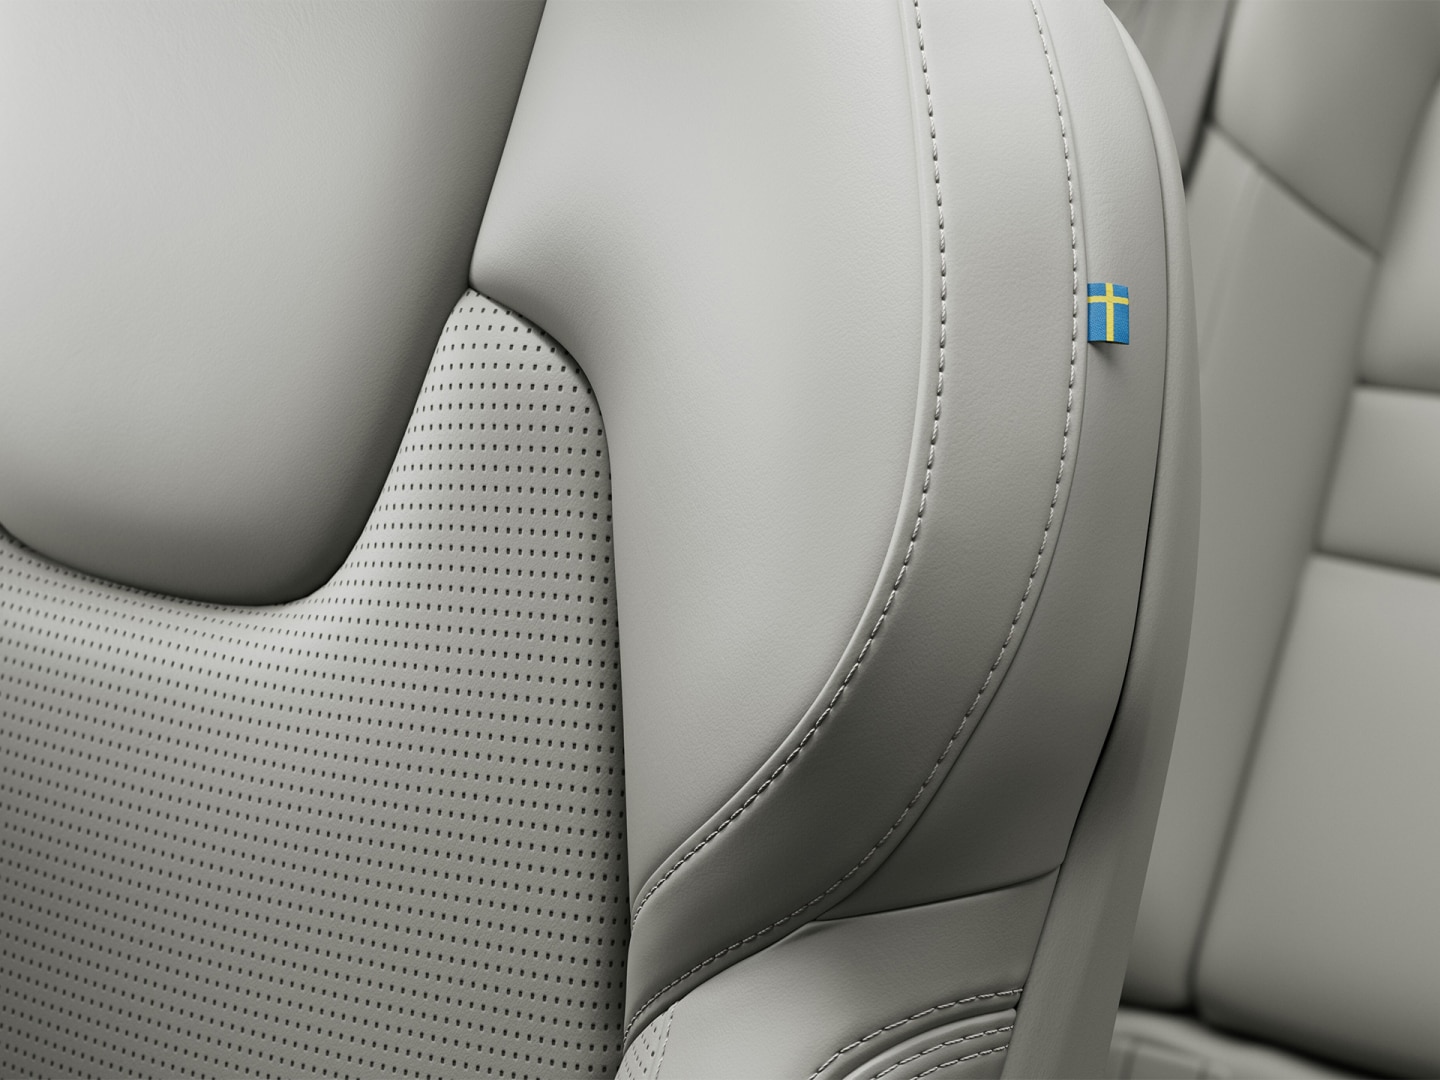 Diseño del asiento delantero en cuero de Napa del semihíbrido Volvo V60.